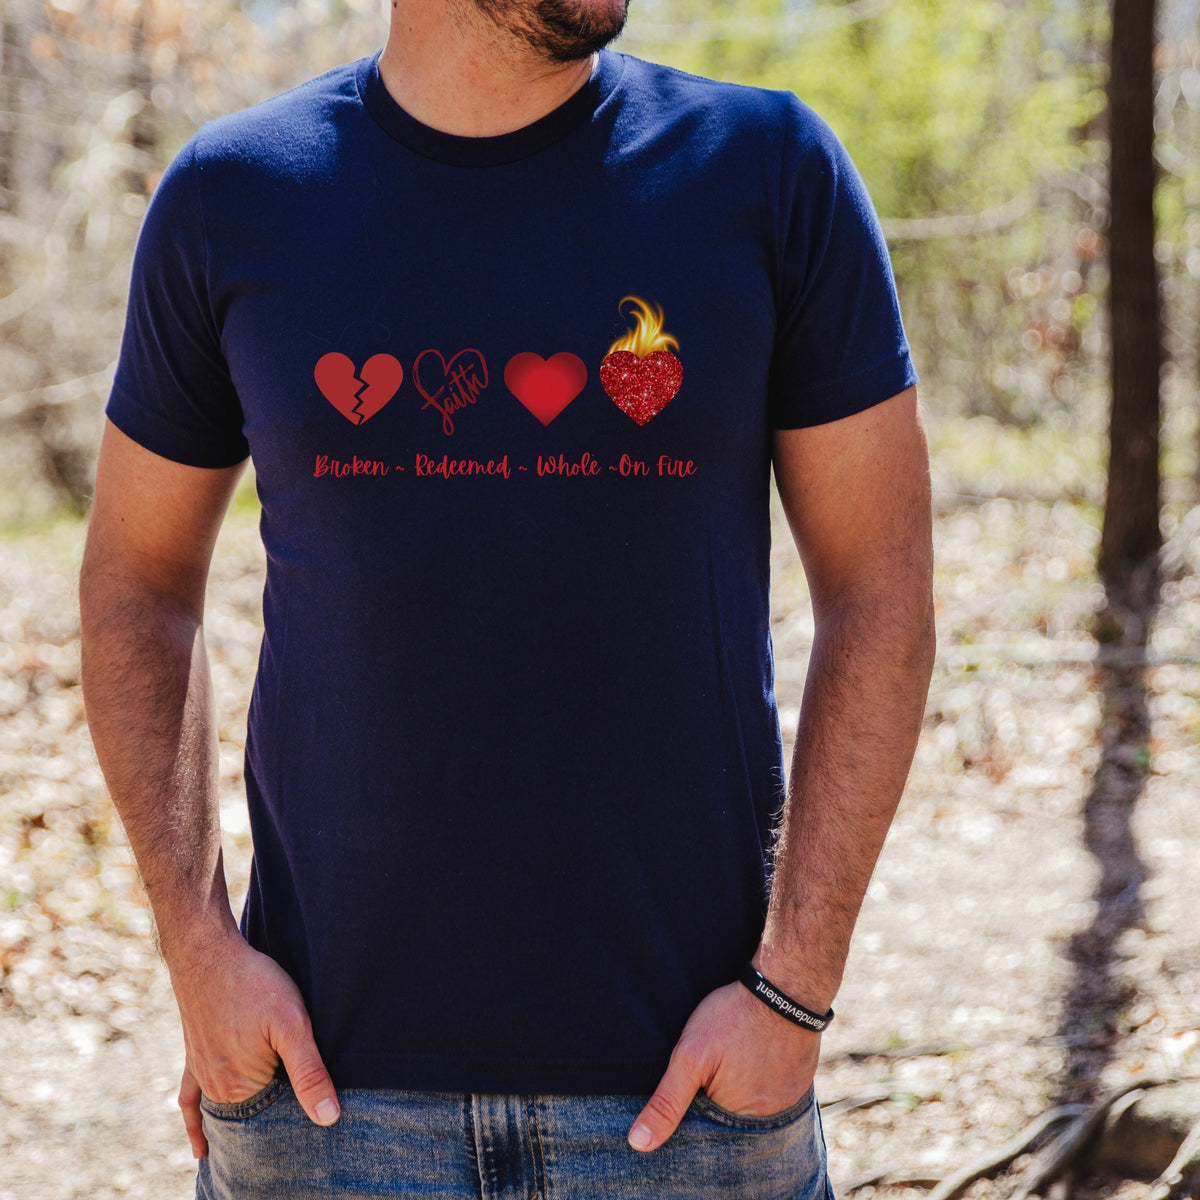 Broken Hearts Redeemed Red Lettering Shirt, Broken Redeemed Whole Heart Shirt, Hearts on Fire Christian Shirt, Women's Christian Shirt